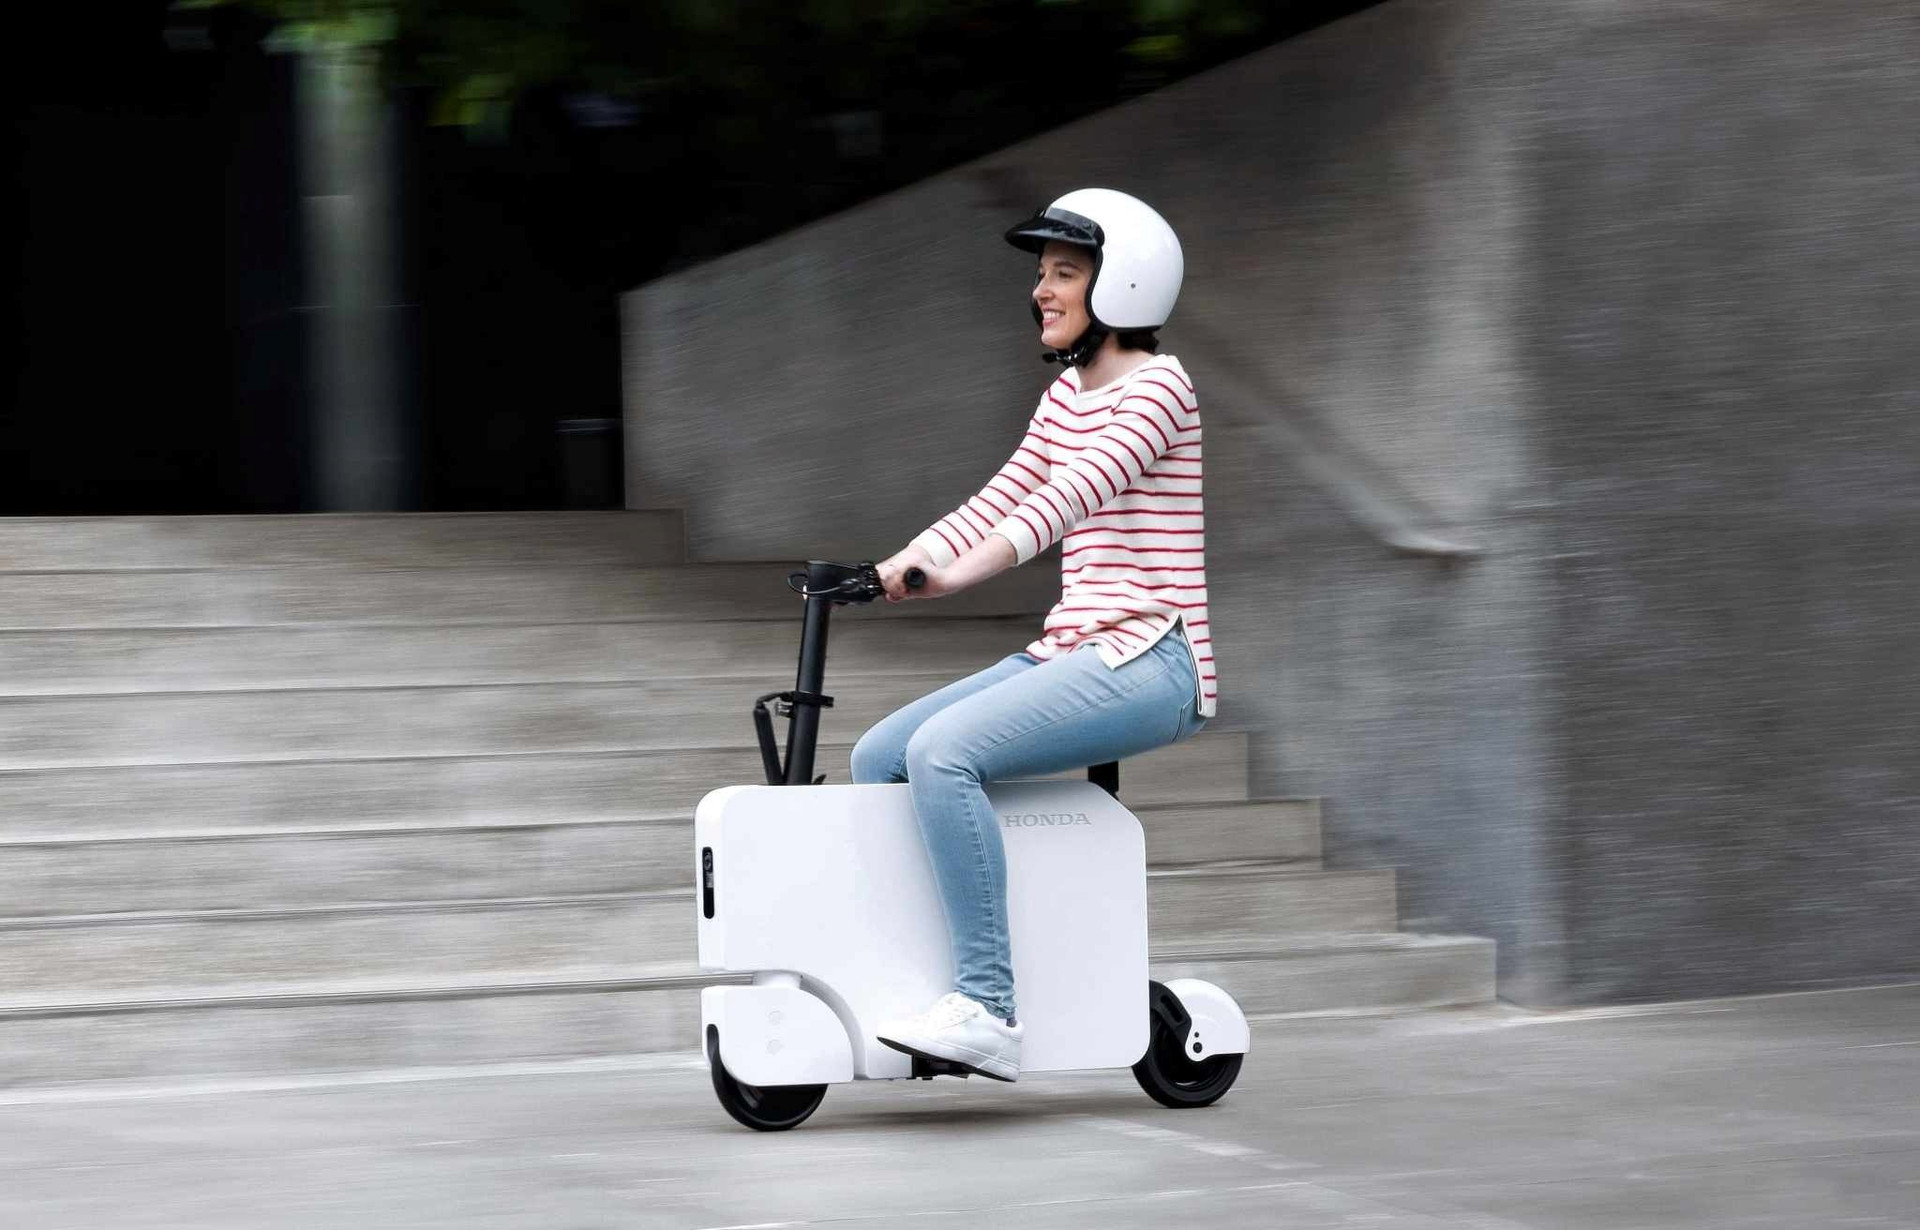 Honda bắt đầu bán mẫu scooter điện mini có một không hai: Gập gọn như 1 chiếc vali, giá dưới 1.000 USD